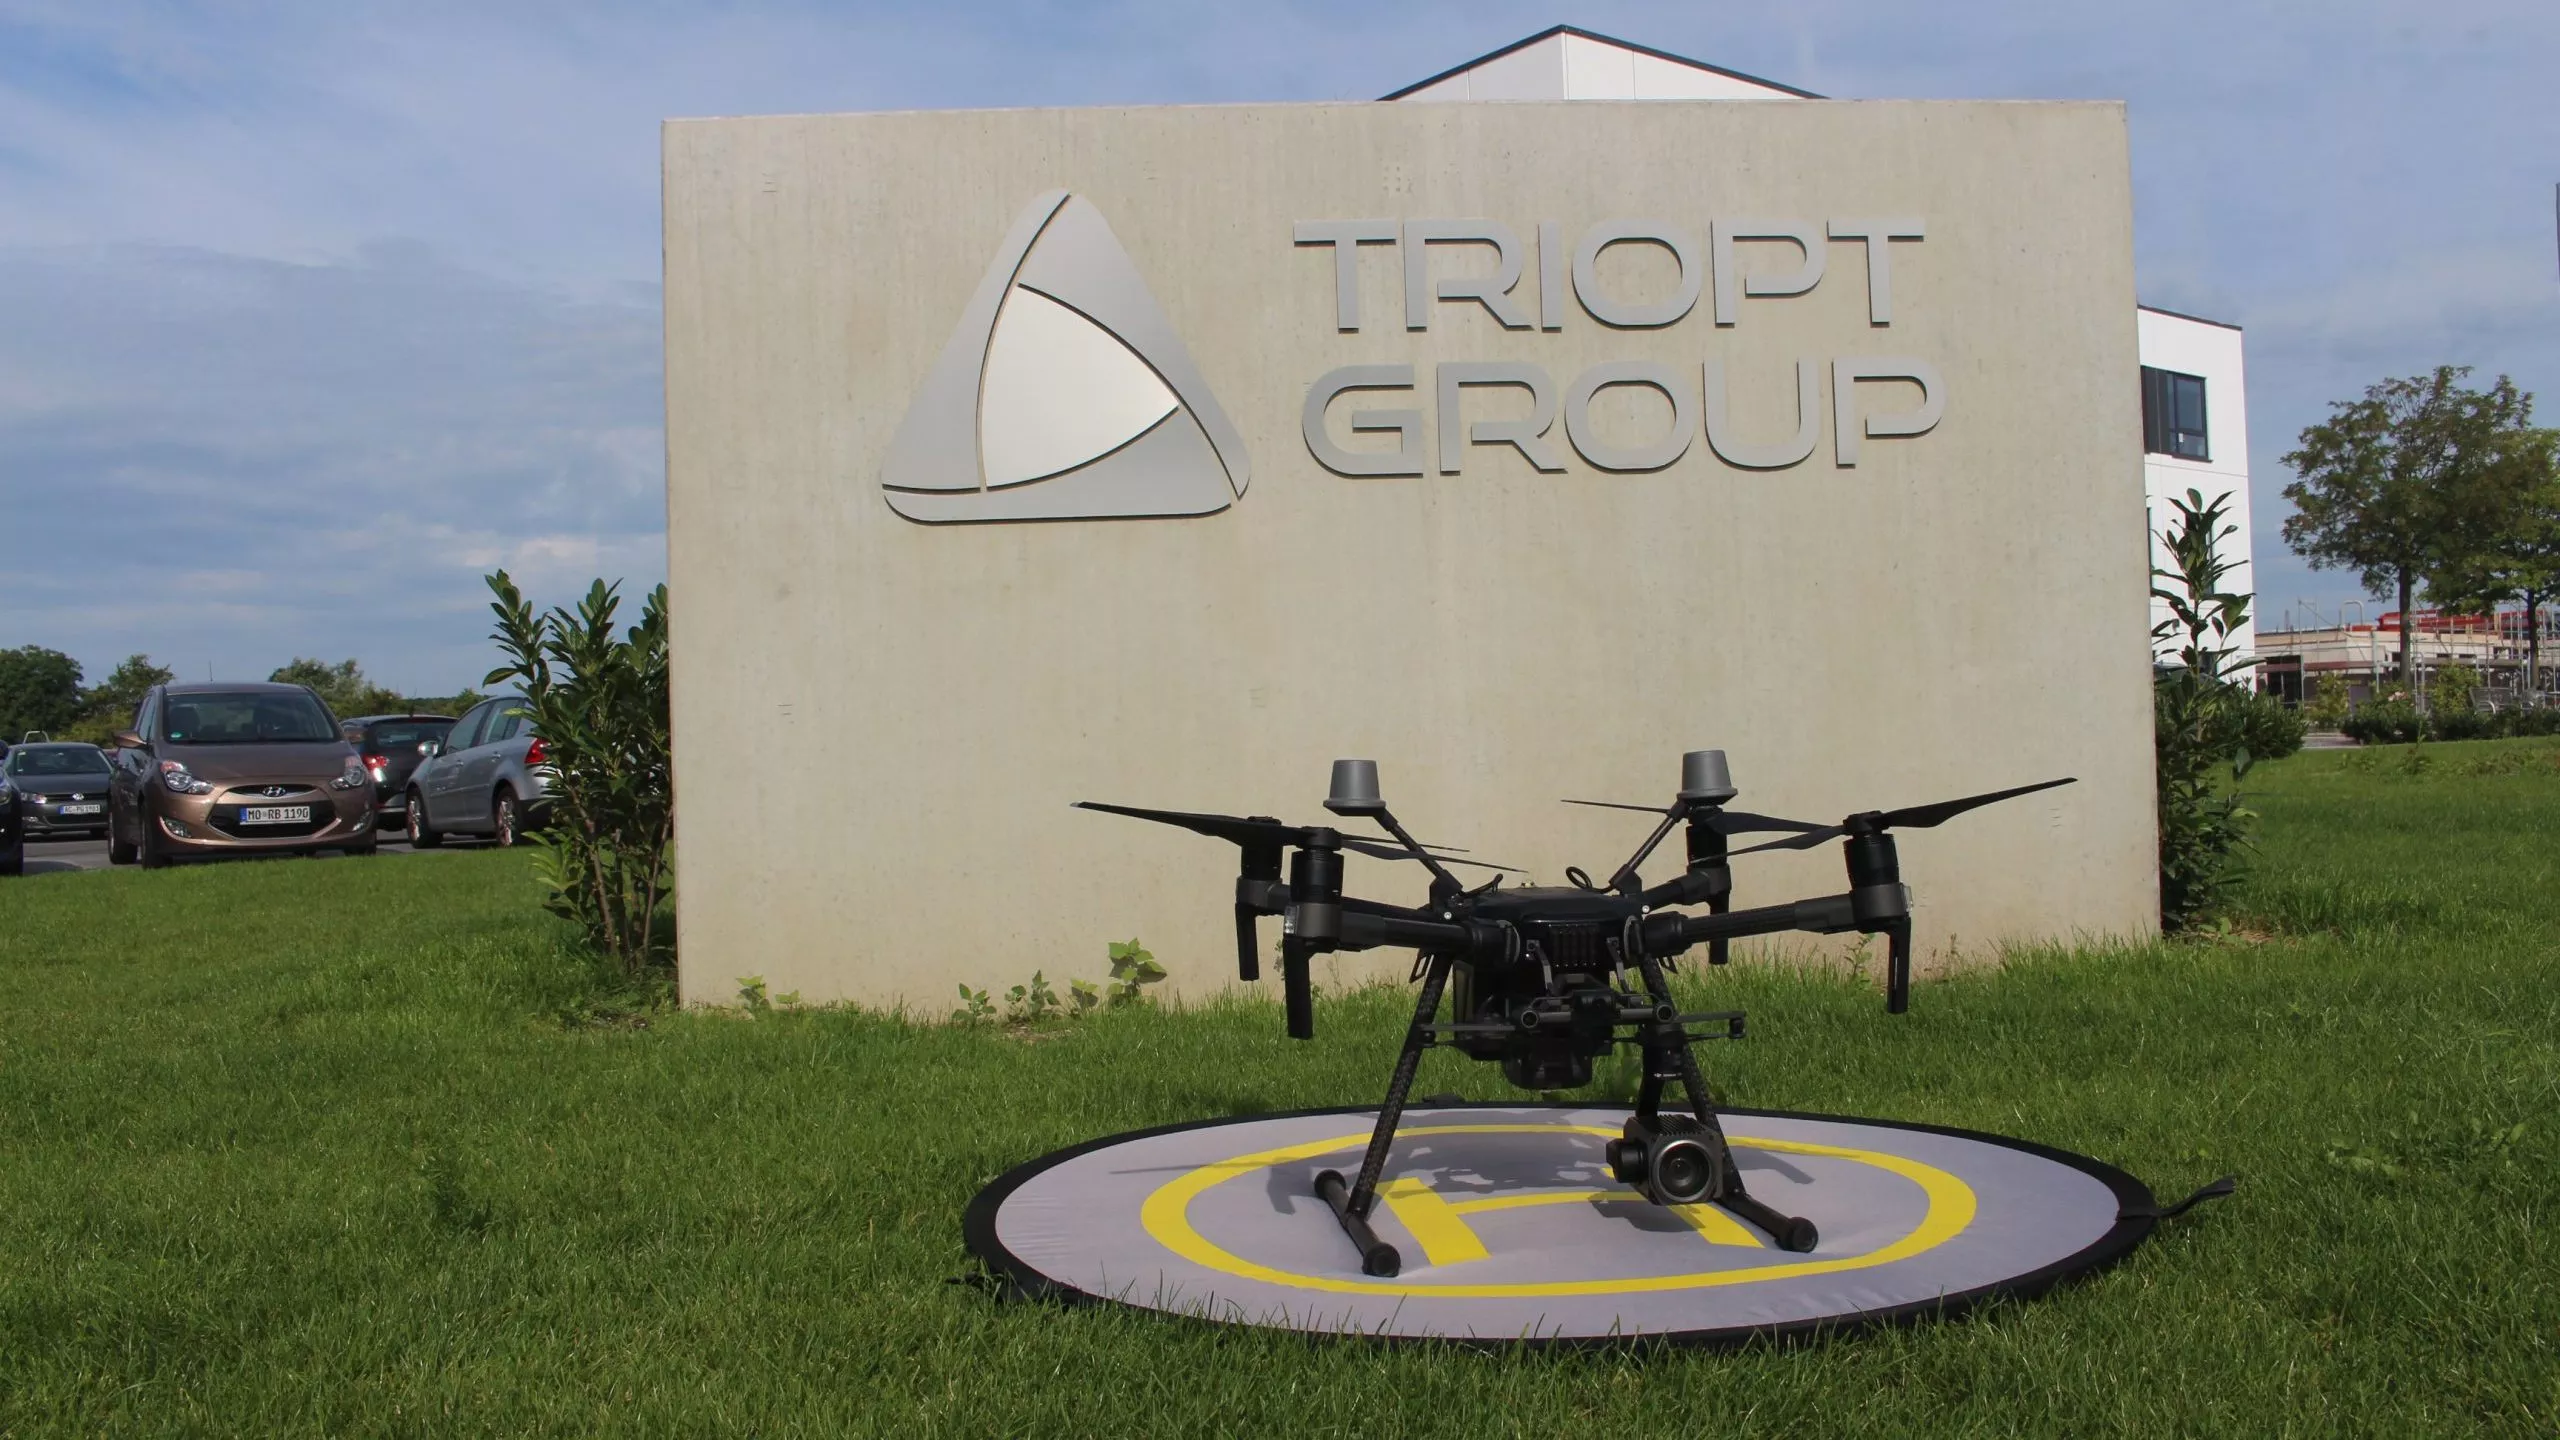 Drohne vor Triopt Group Schild